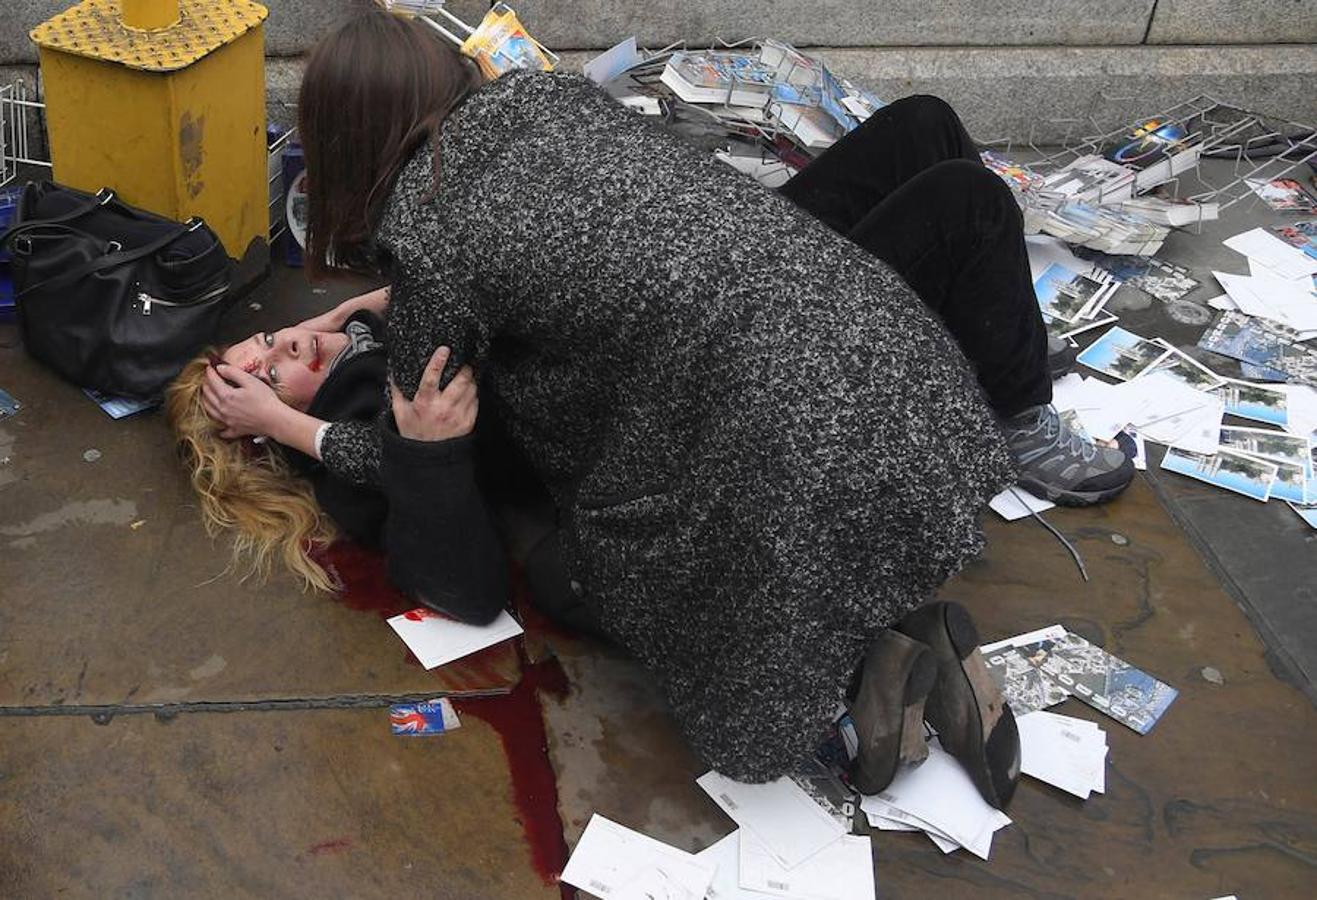 La obra del fotógrafo británico Toby Melville para Reuters tomada el 22 de marzo de 2017 que muestra a una mujer mientras consuela a una víctima herida tendida en el suelo tras ser atropellada por un automóvil conducido por el yihadista Khalid Masood, que causó la muerte de 5 personas, en el Puente de Westminister en Londres (Reino Unido). 